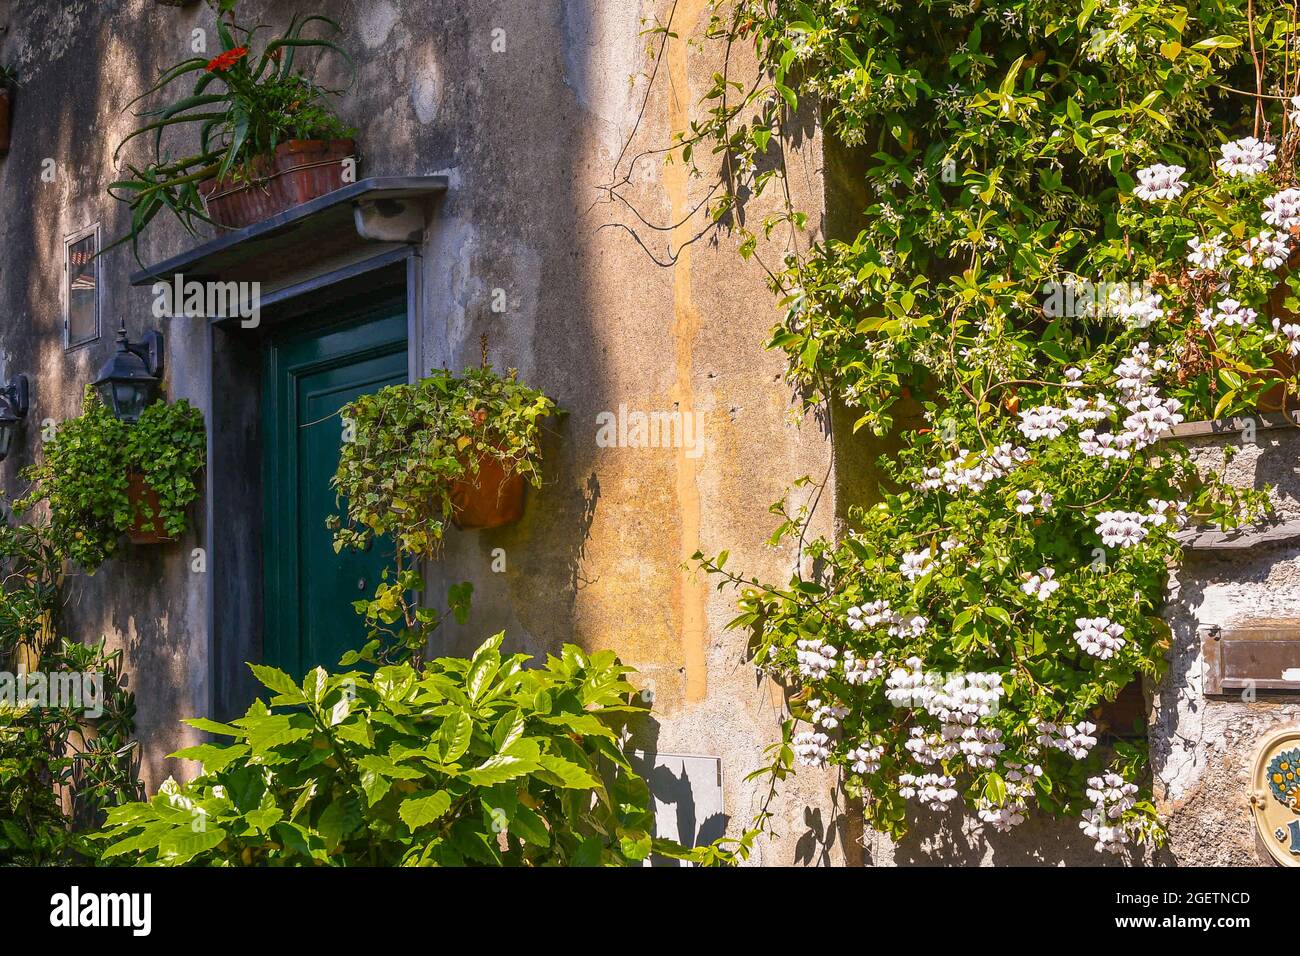 Detalle de la entrada de una antigua casa en el pueblo pesquero, rodeada de plantas floridas en macetas en verano, Boccadasse, Génova, Liguria, Italia Foto de stock